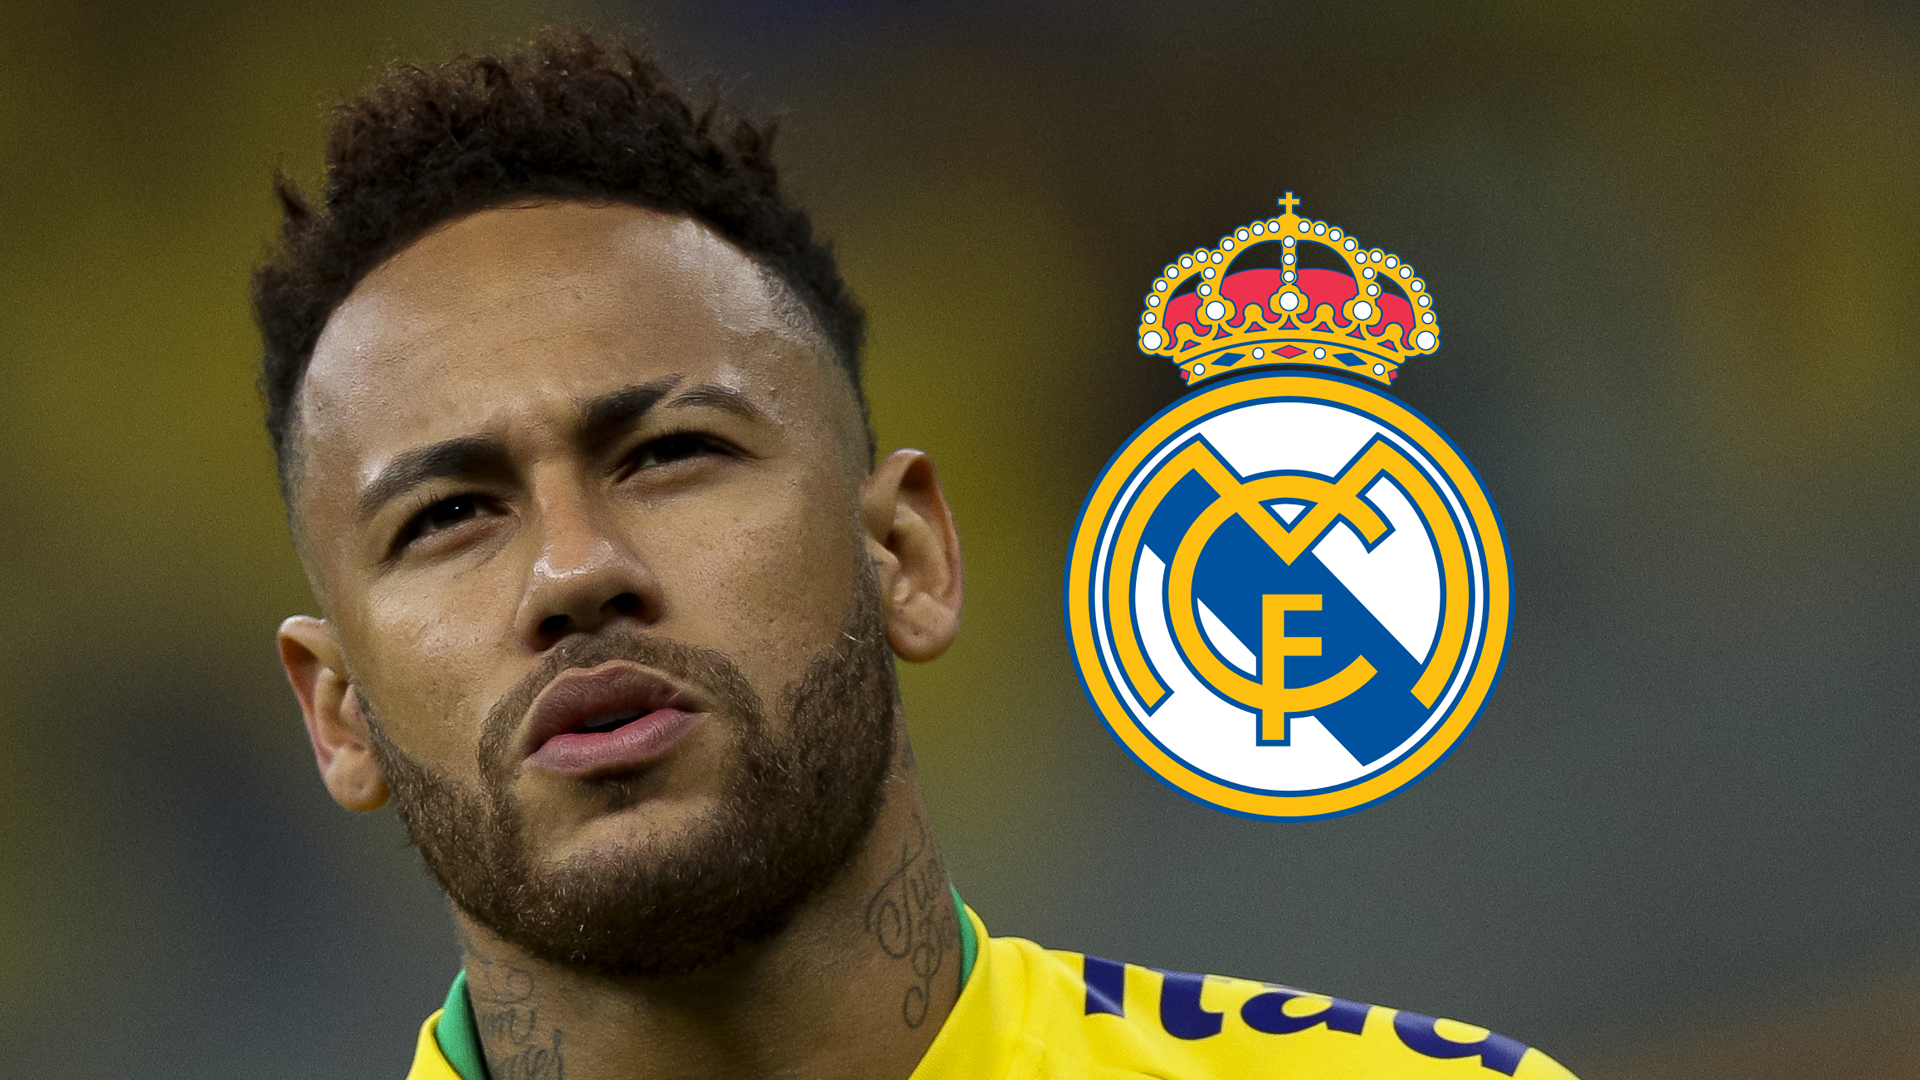 Le PSG a refusé 300M¬ du Real pour Neymar (agent)